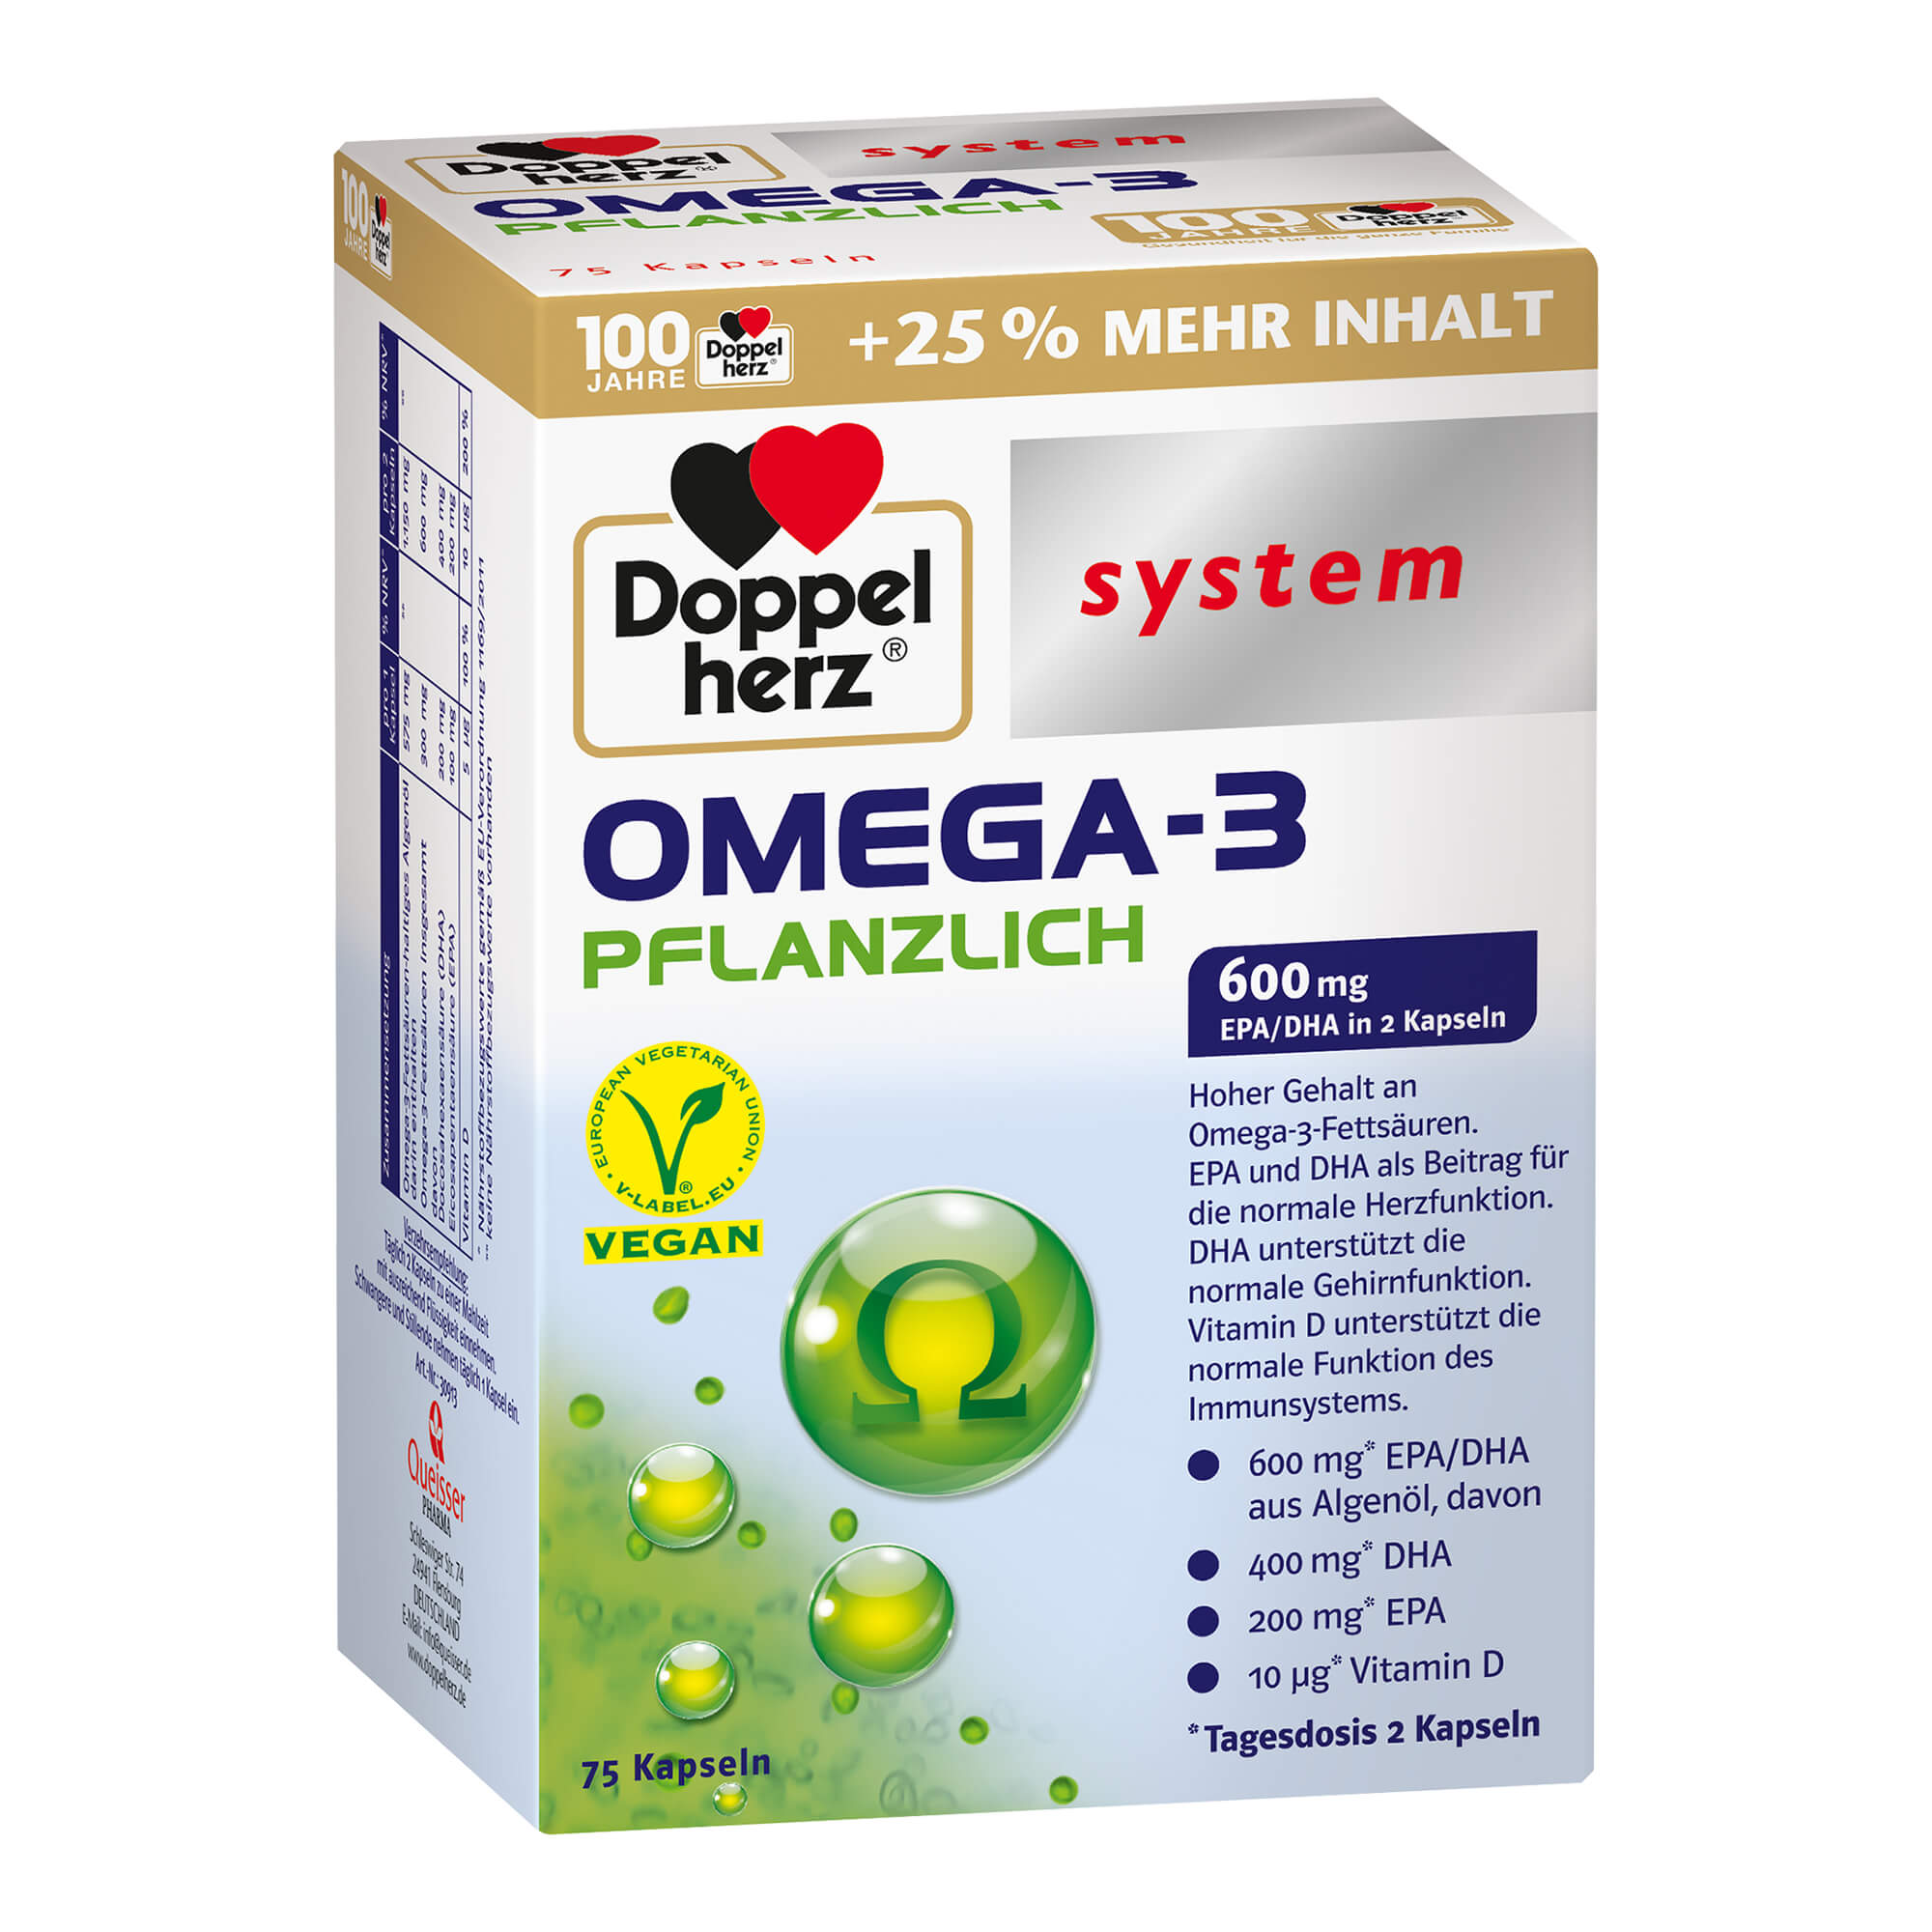 Kapseln mit Omega-3 Fettsäuren aus Algenöl, Vitamin D.